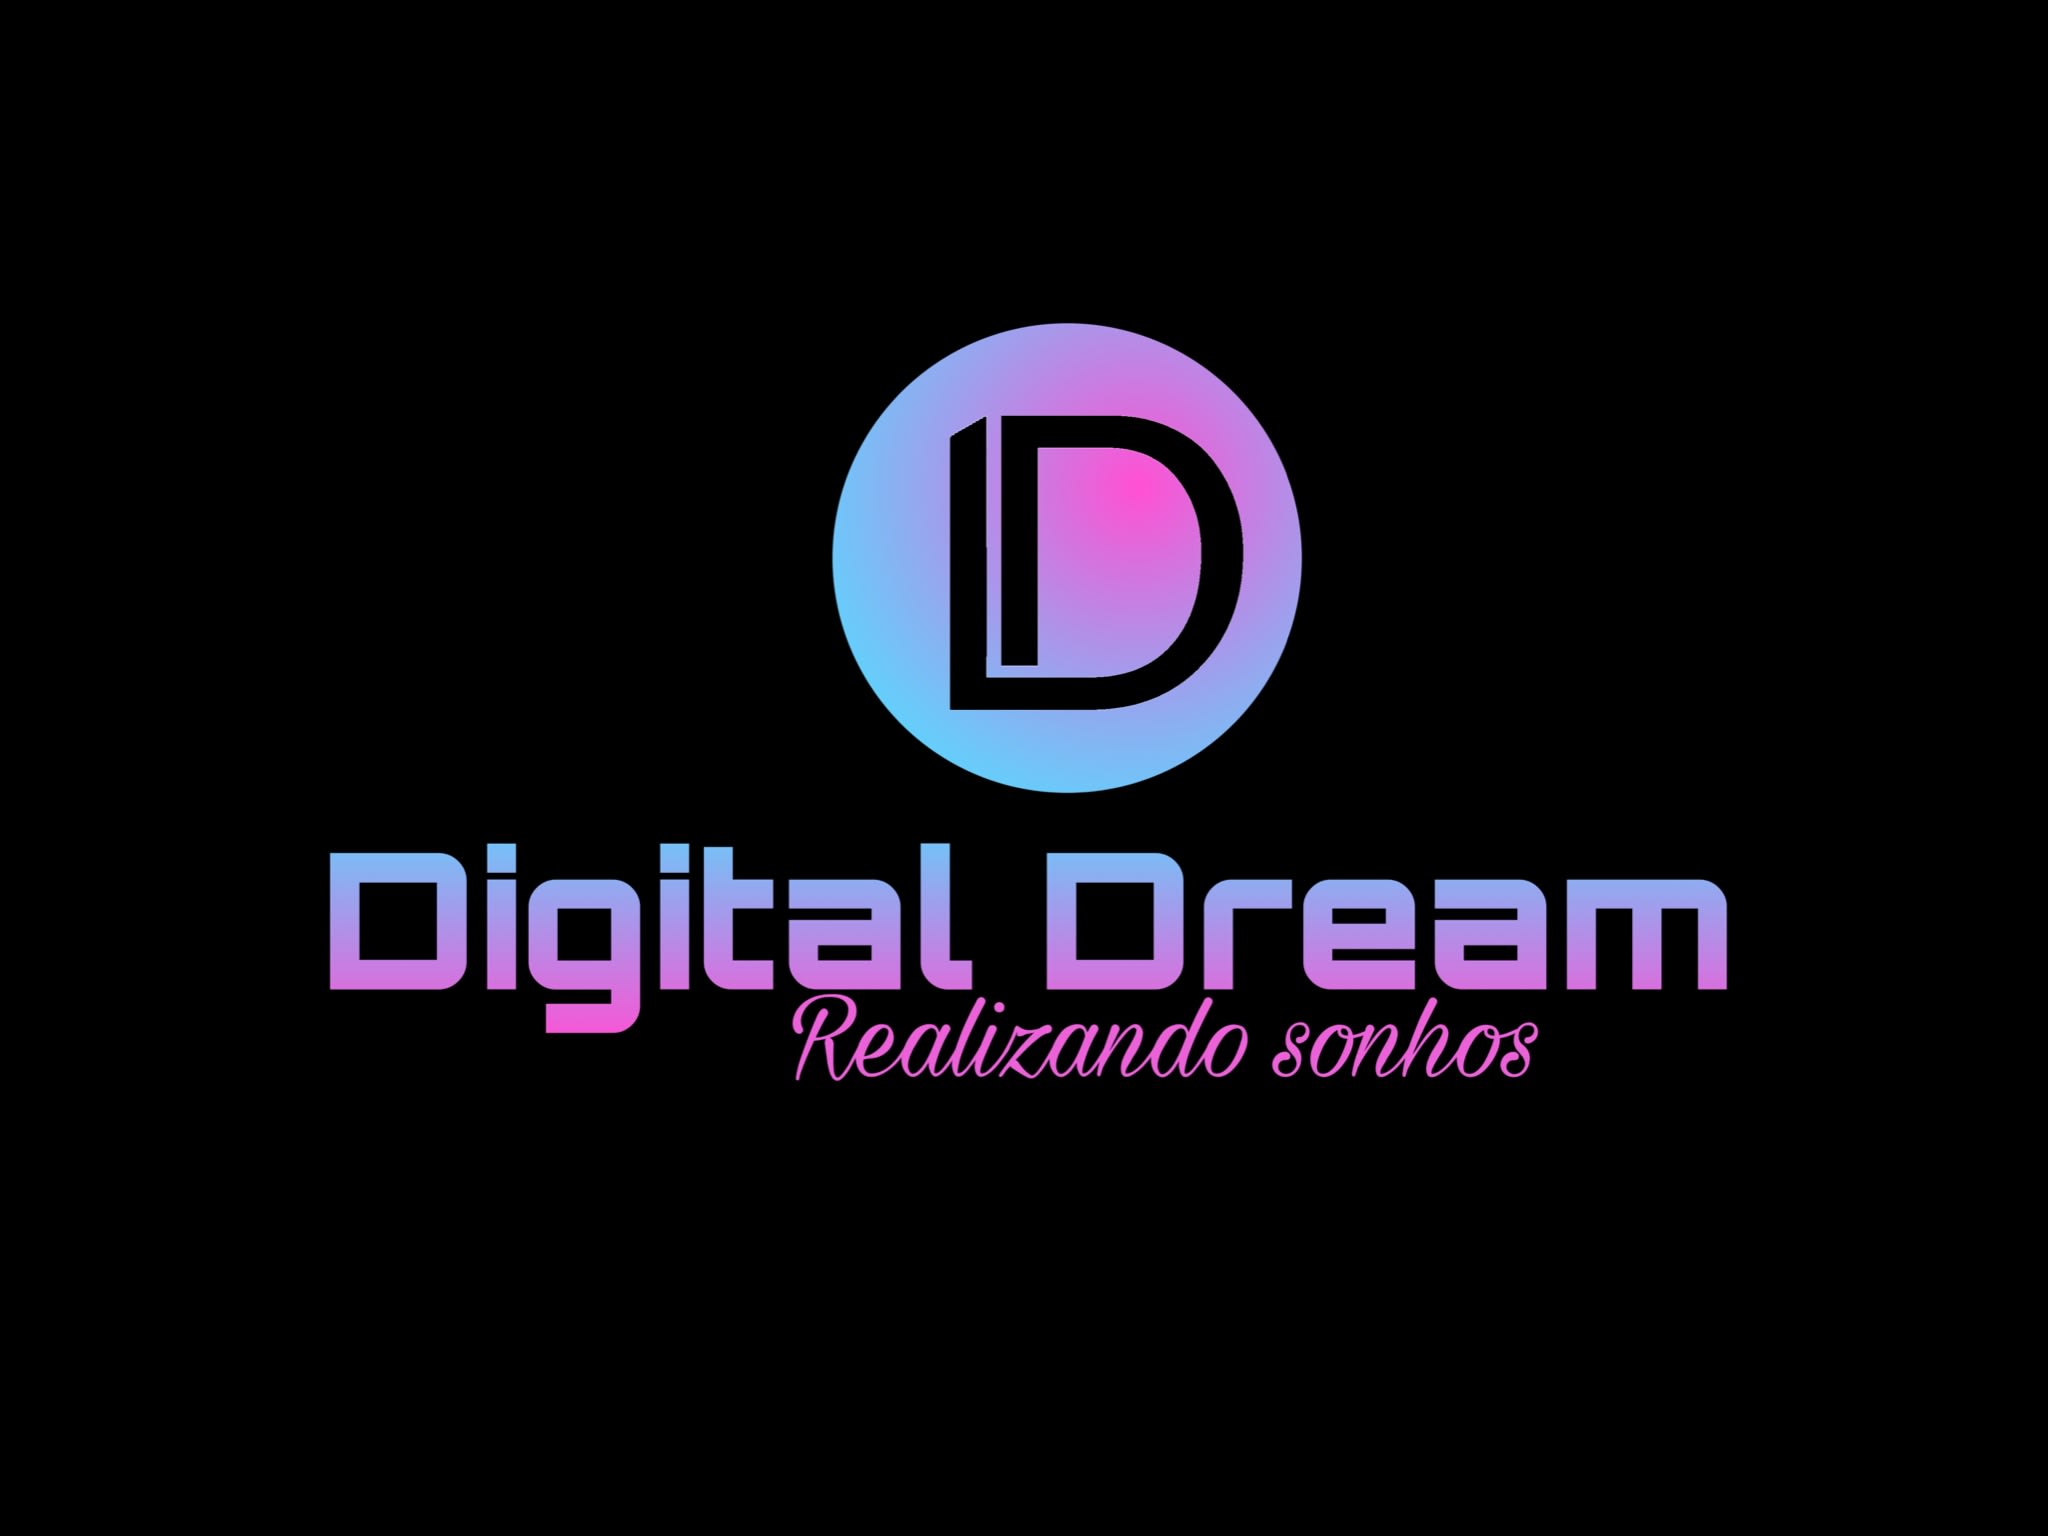 Digital Dream